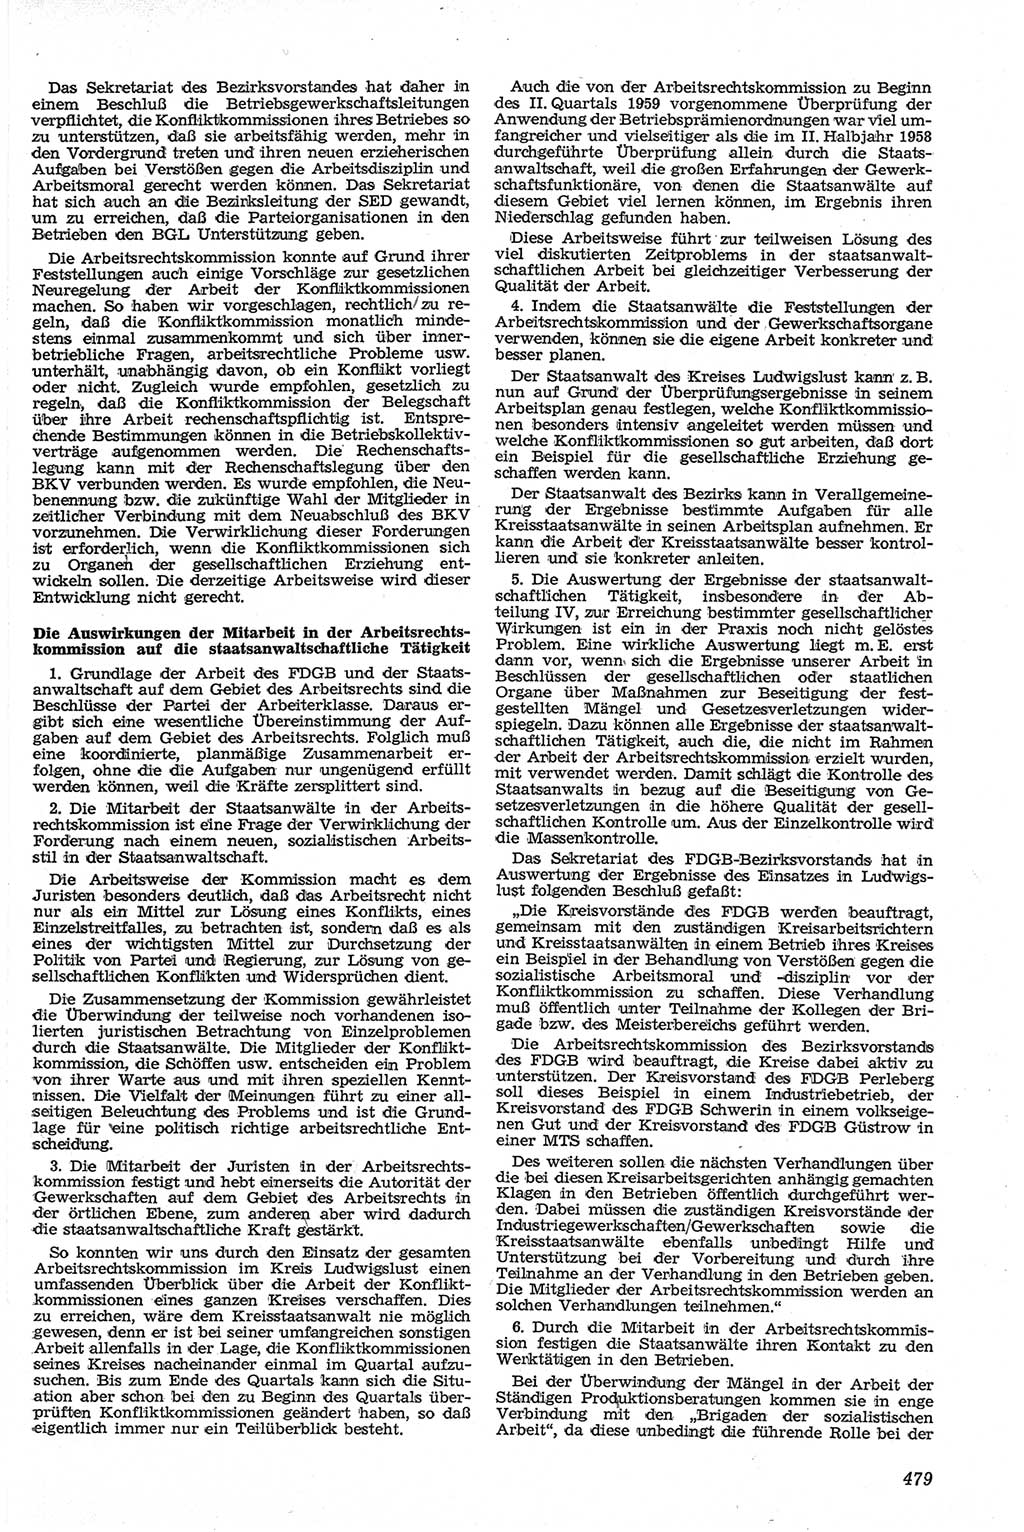 Neue Justiz (NJ), Zeitschrift für Recht und Rechtswissenschaft [Deutsche Demokratische Republik (DDR)], 13. Jahrgang 1959, Seite 479 (NJ DDR 1959, S. 479)